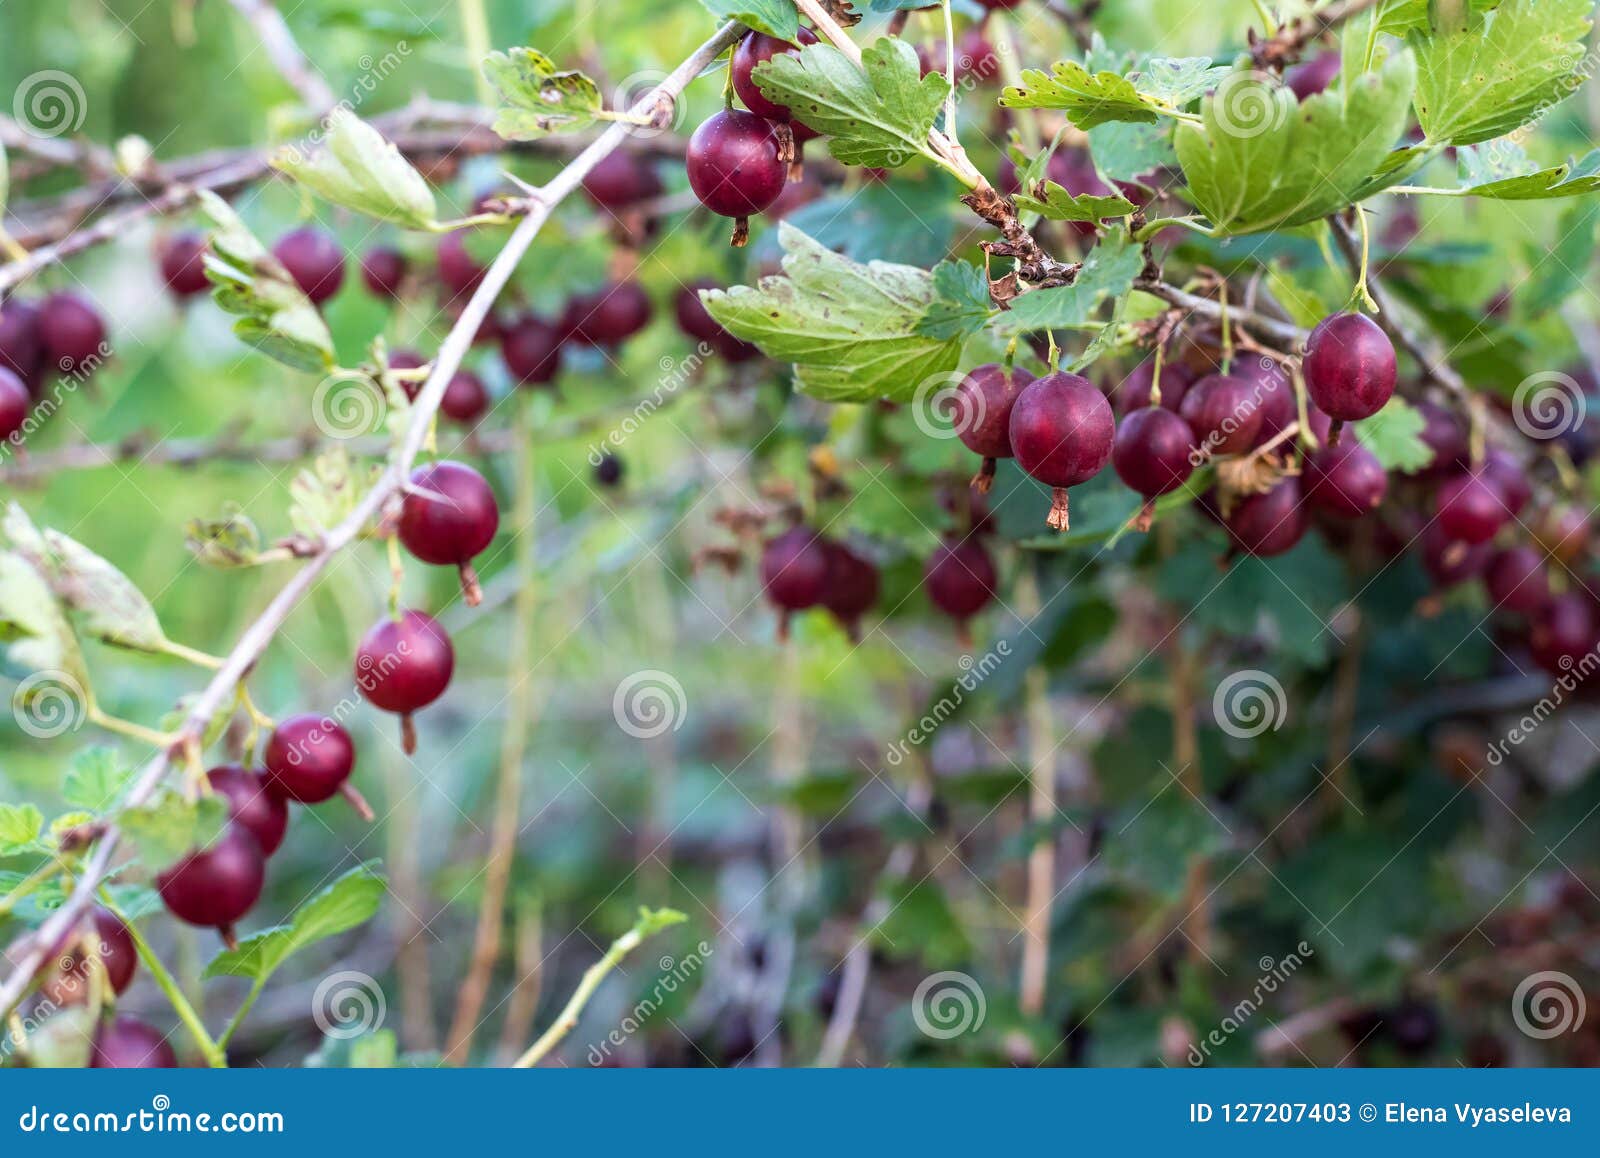 鹅莓都有哪些常见的品种？-168鲜花速递网